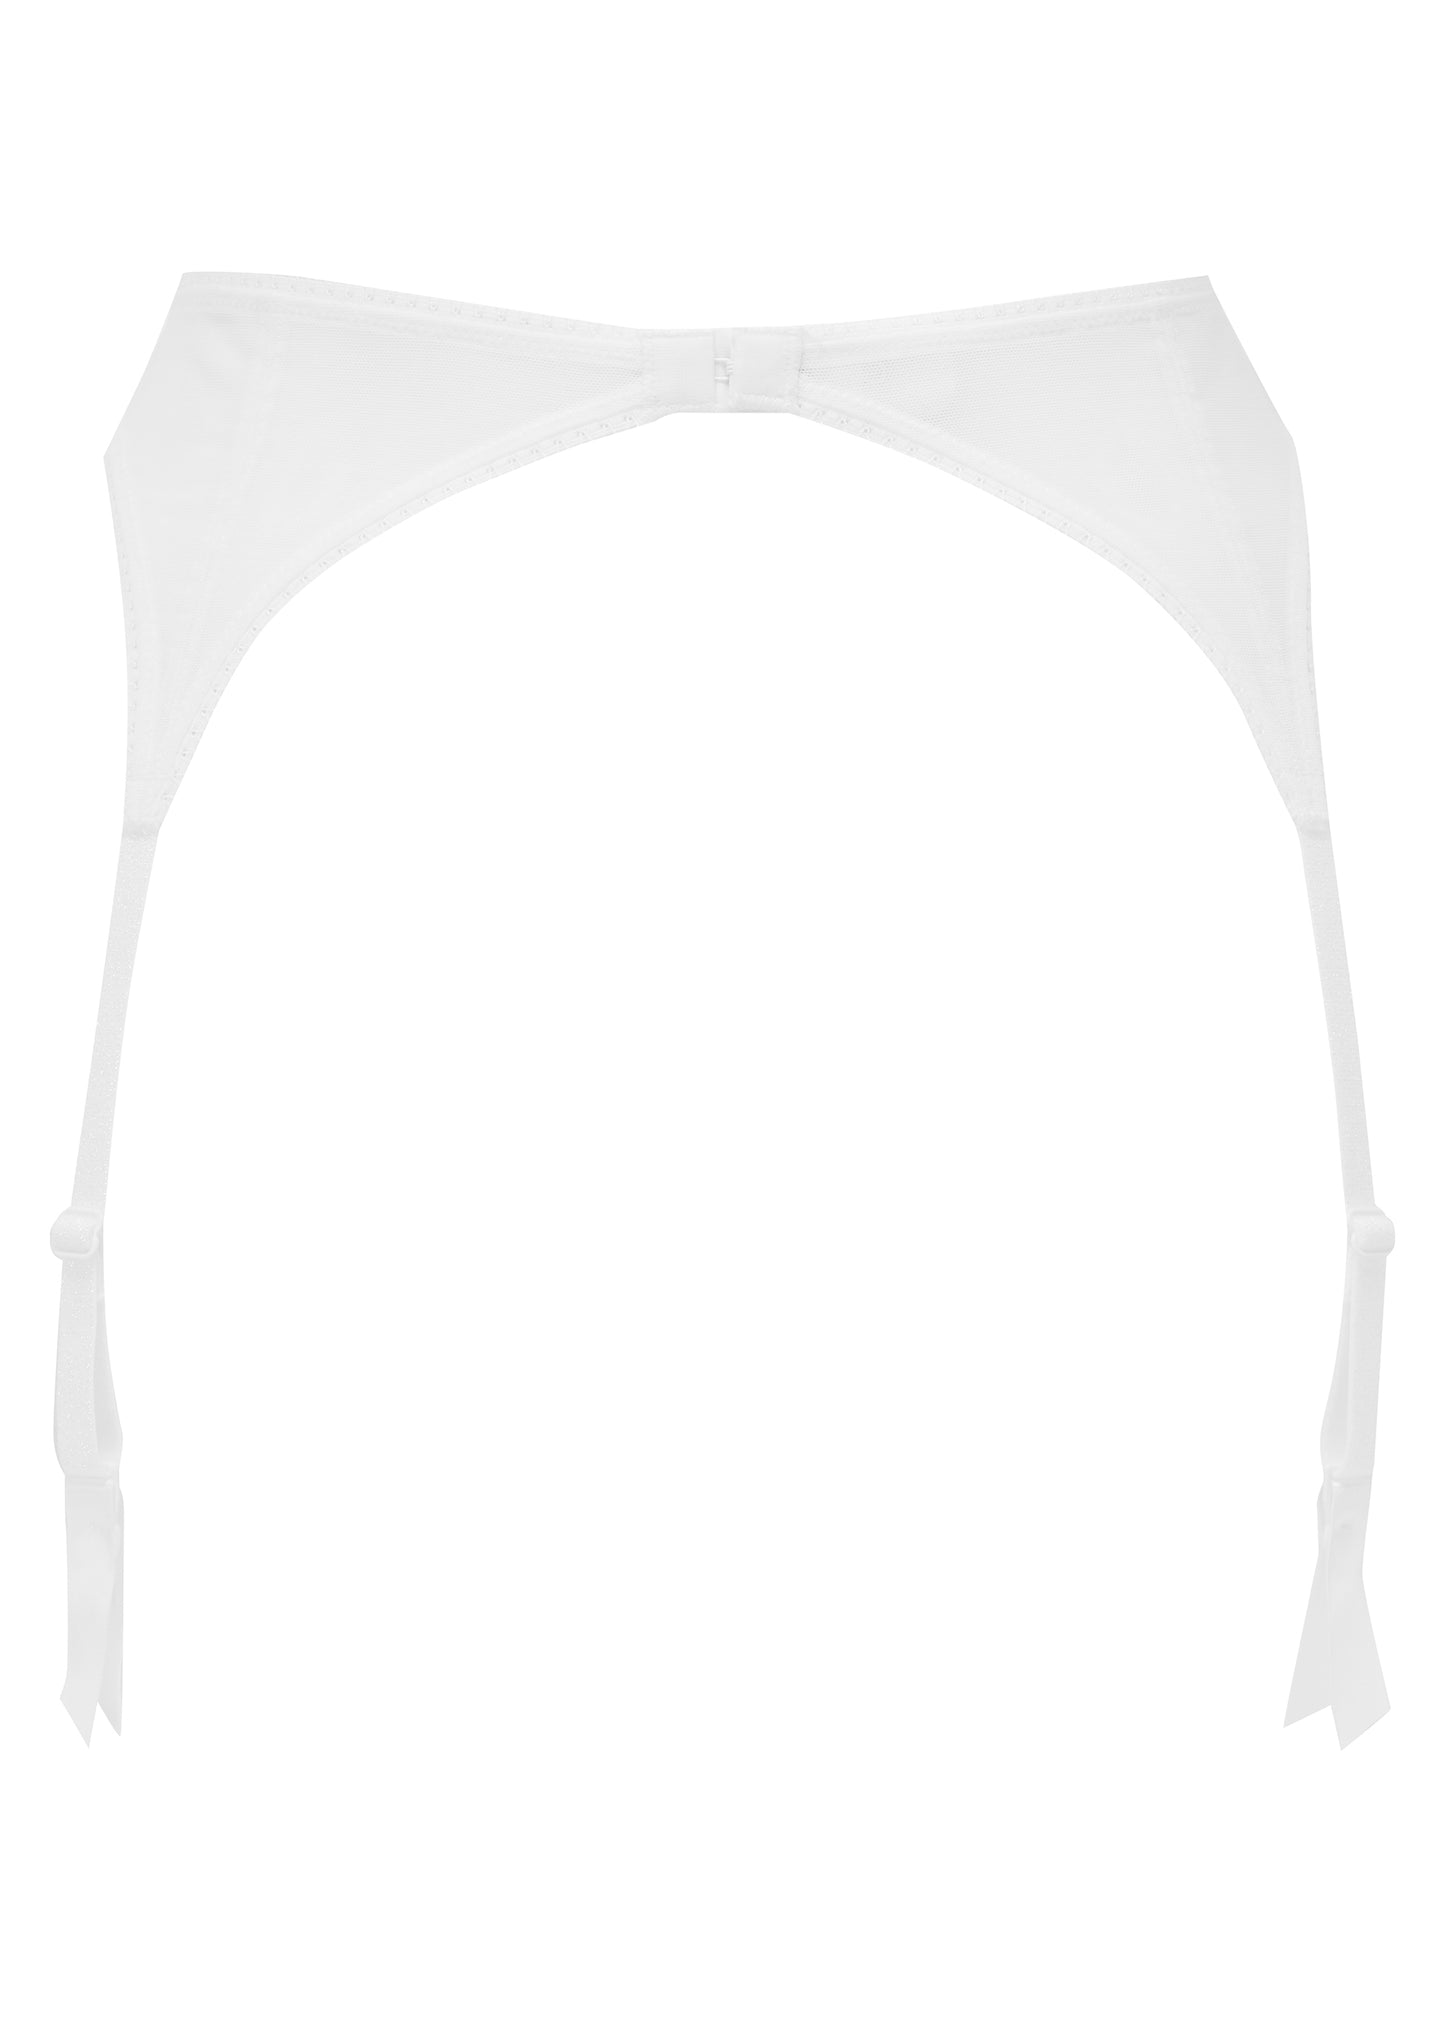 Fiesta Suspender in Sparkling White By Gossard - sizes XS-XL